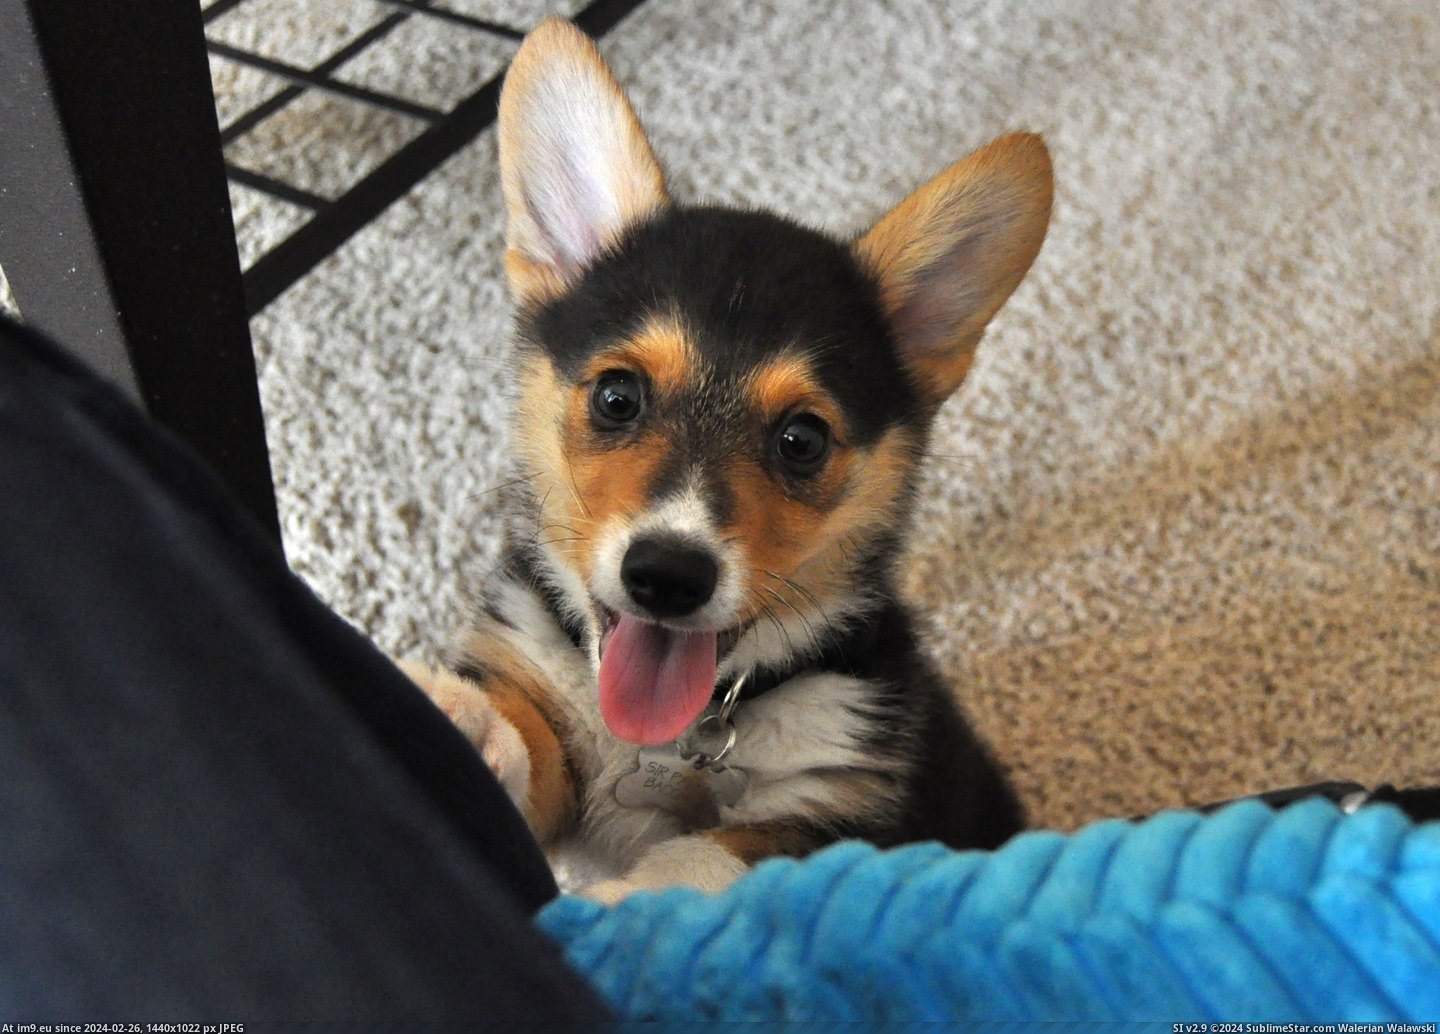 #Puppy #Pancake #Corgi [Aww] This is my corgi puppy, Pancake. 5 Pic. (Image of album My r/AWW favs))